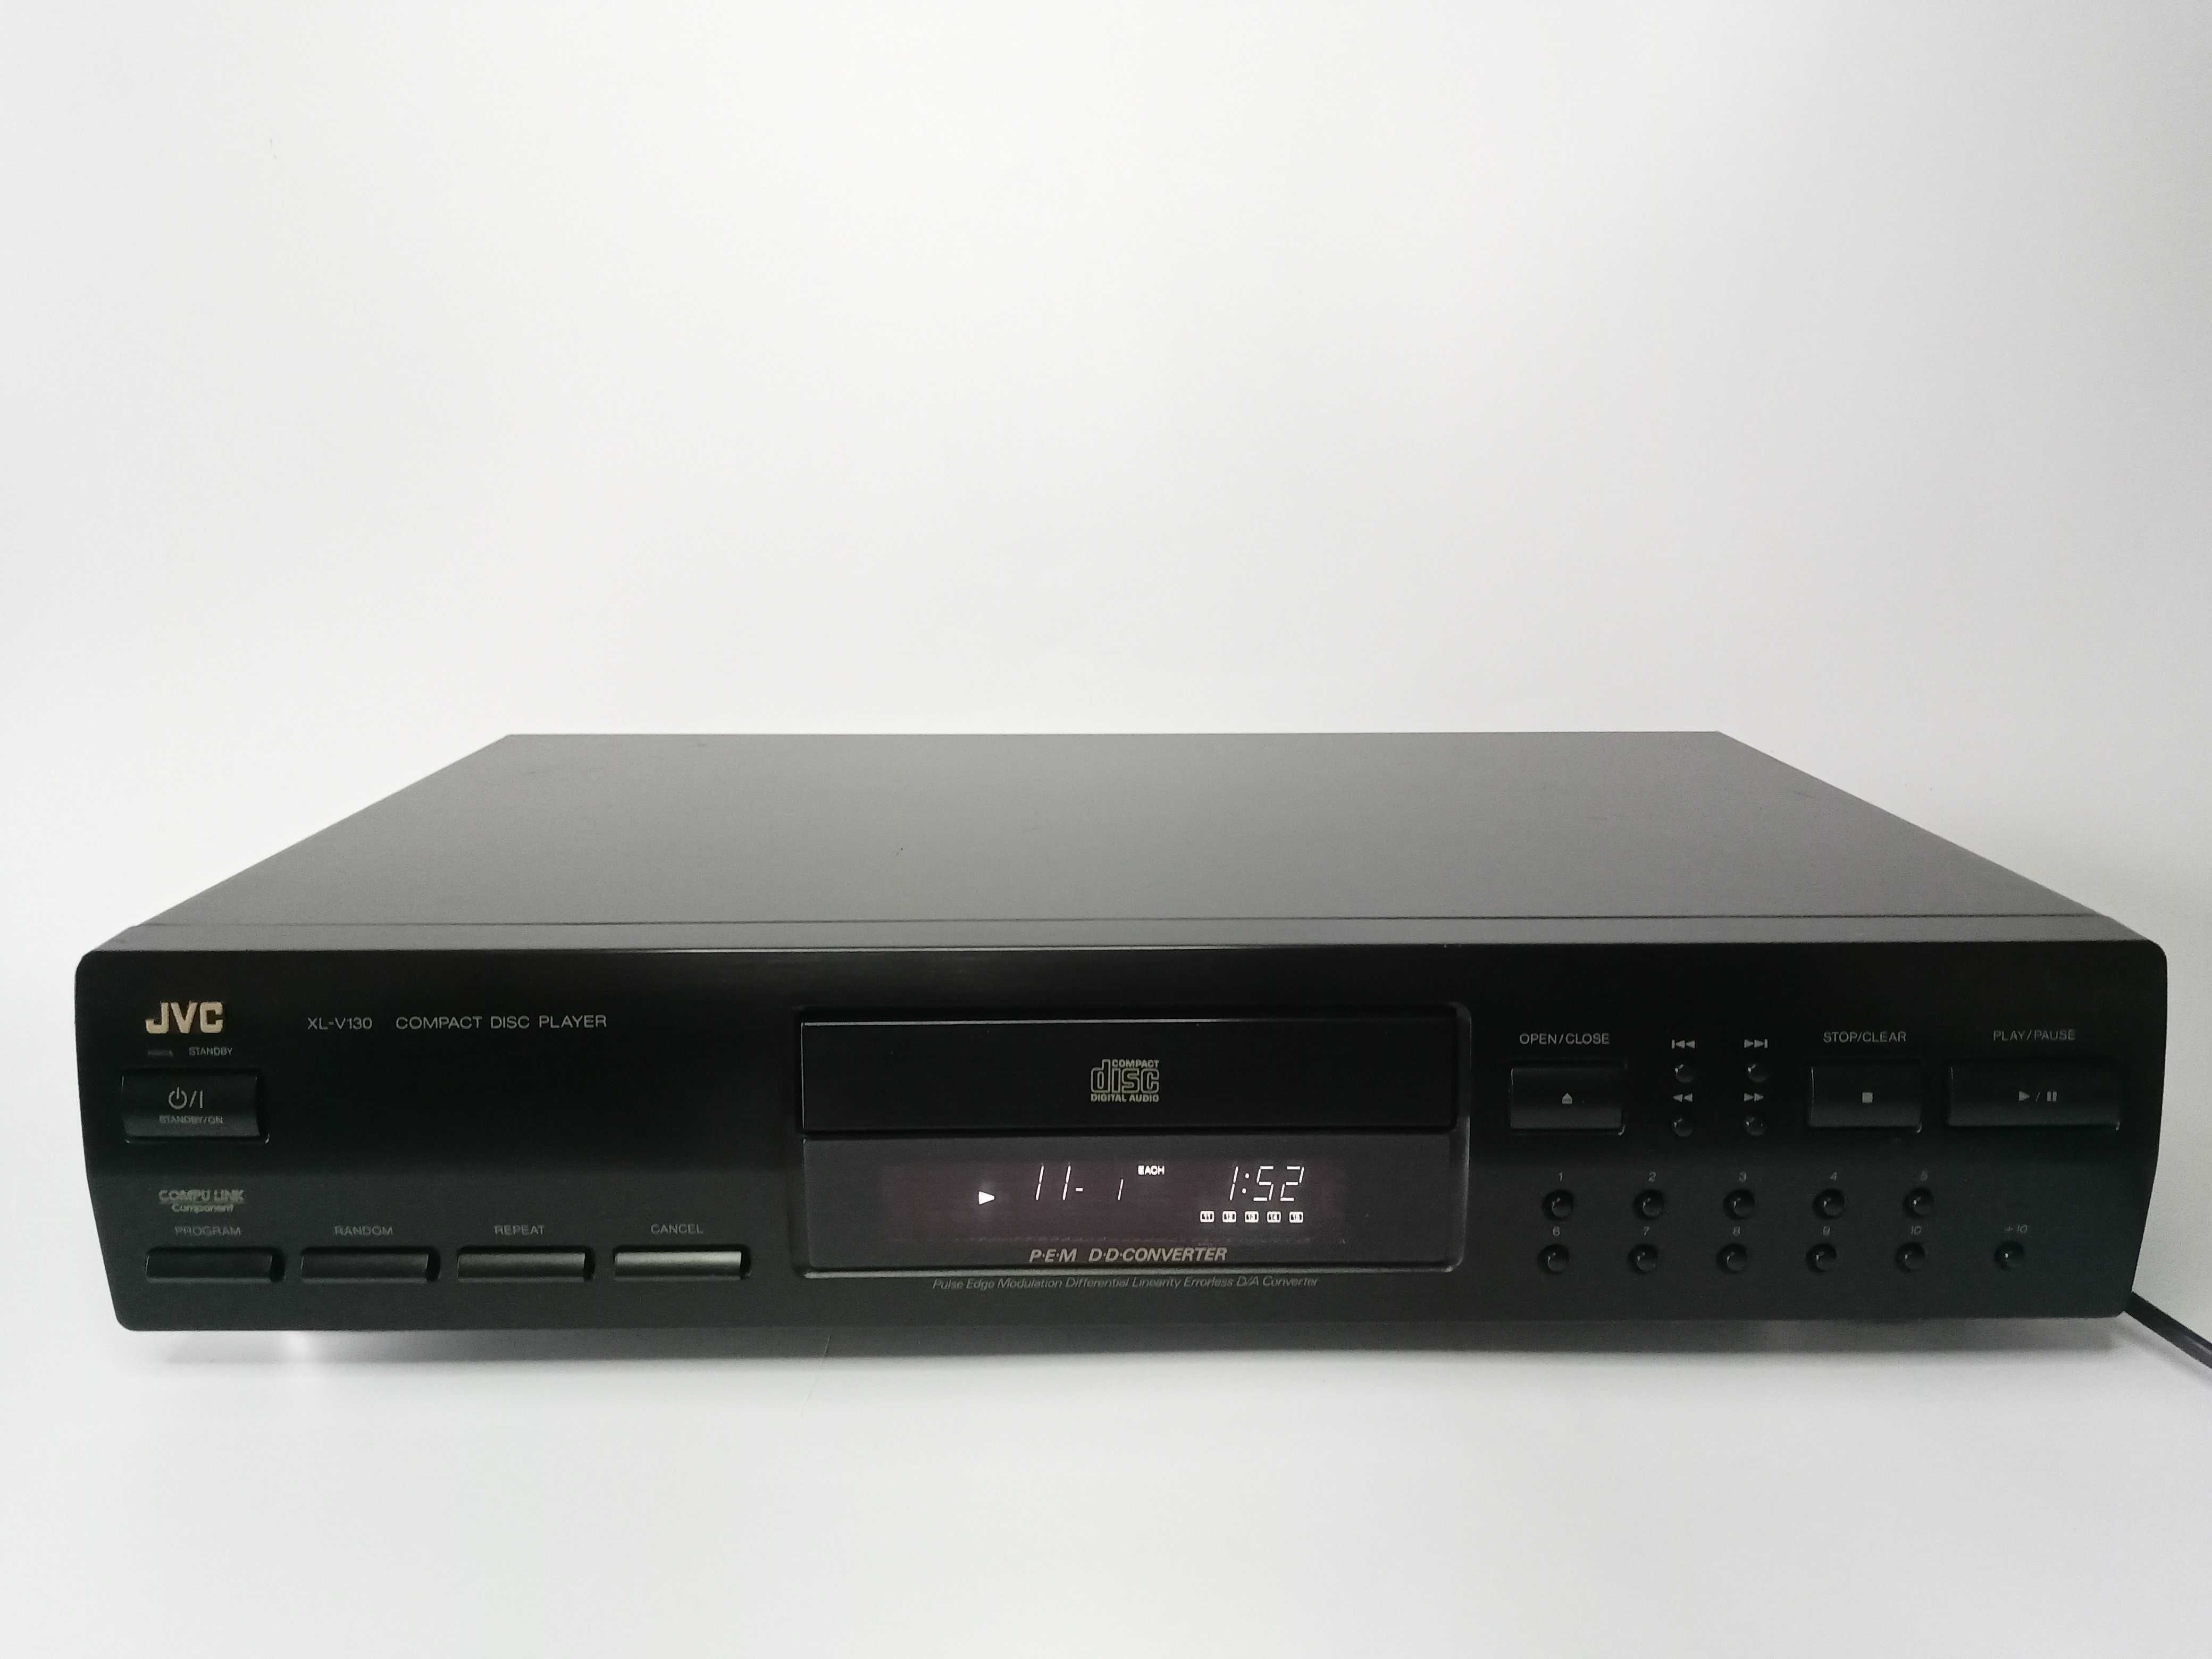 JVC XL-V130 odtwarzacz CD